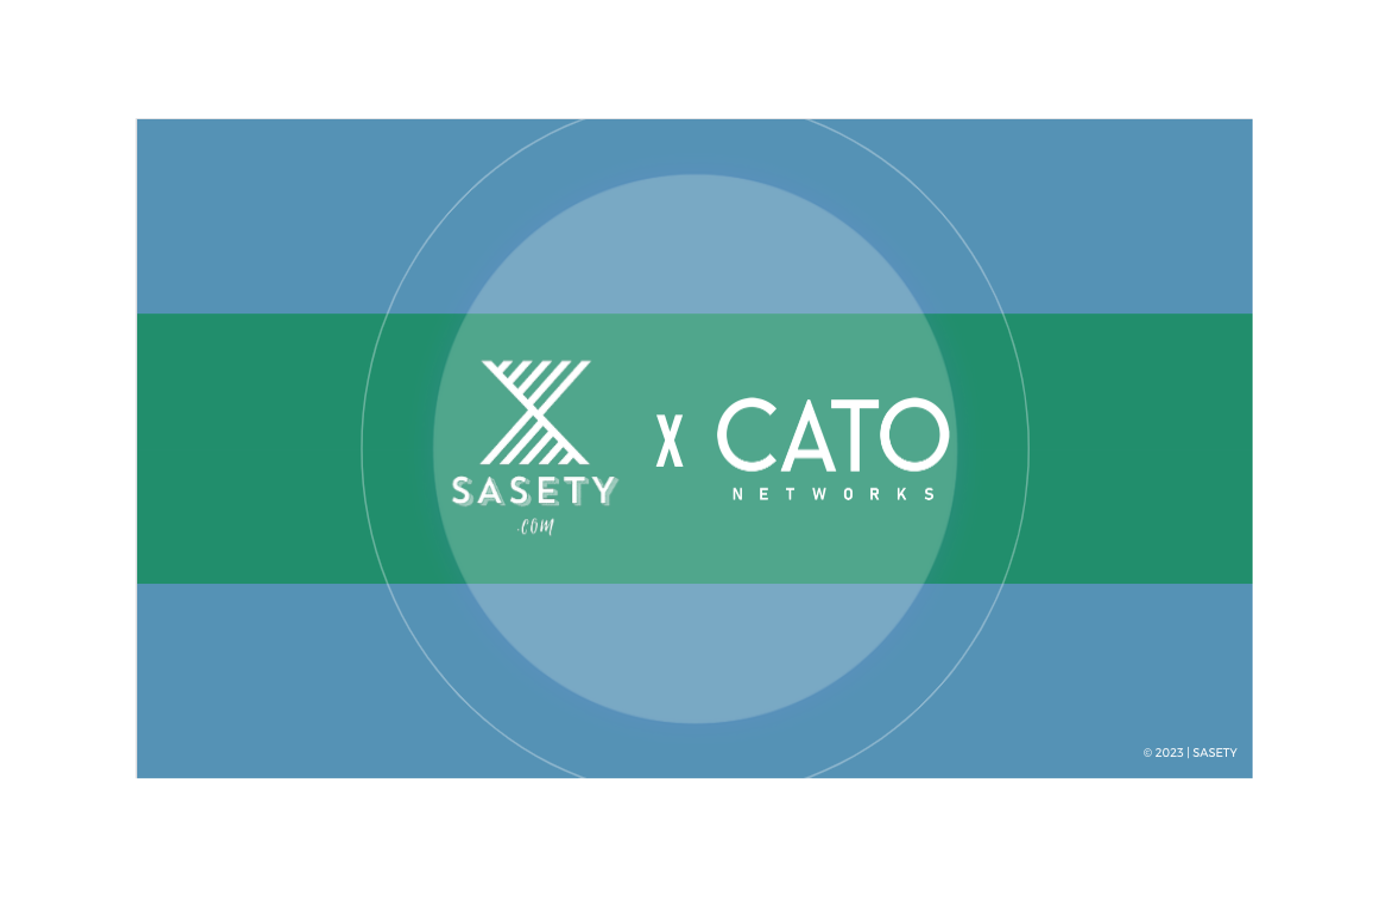 SASETY - Comment l’approche SASE de Cato Networks permet d’améliorer son niveau de sécurité ?